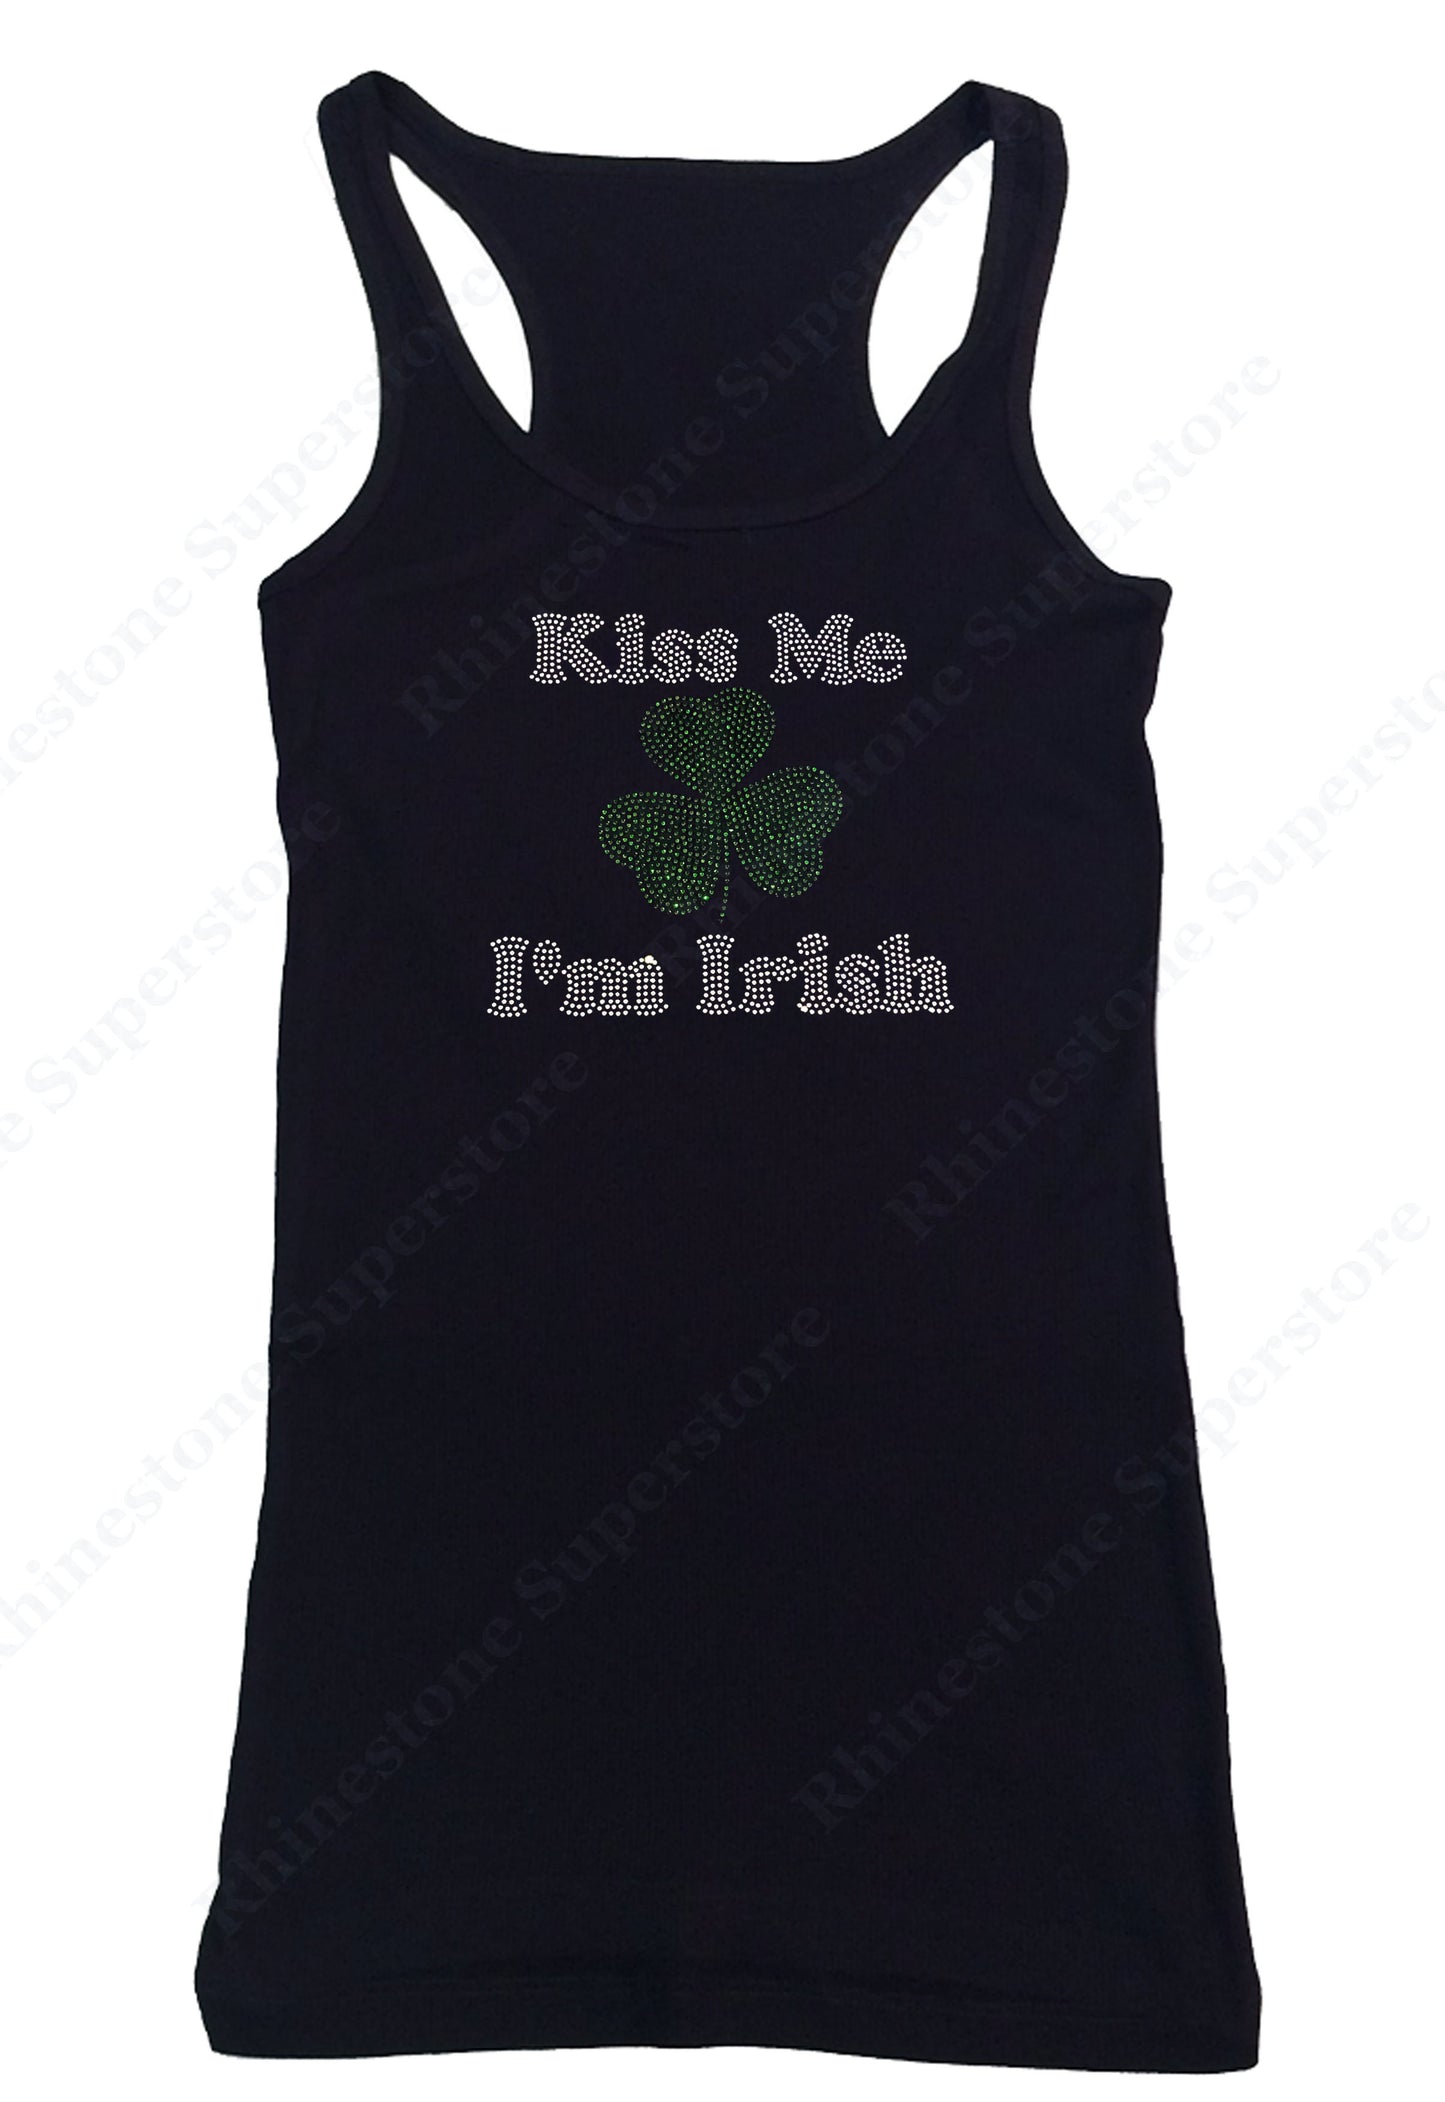 Womens T-shirt with Kiss Me I'm Irish in Rhinestones